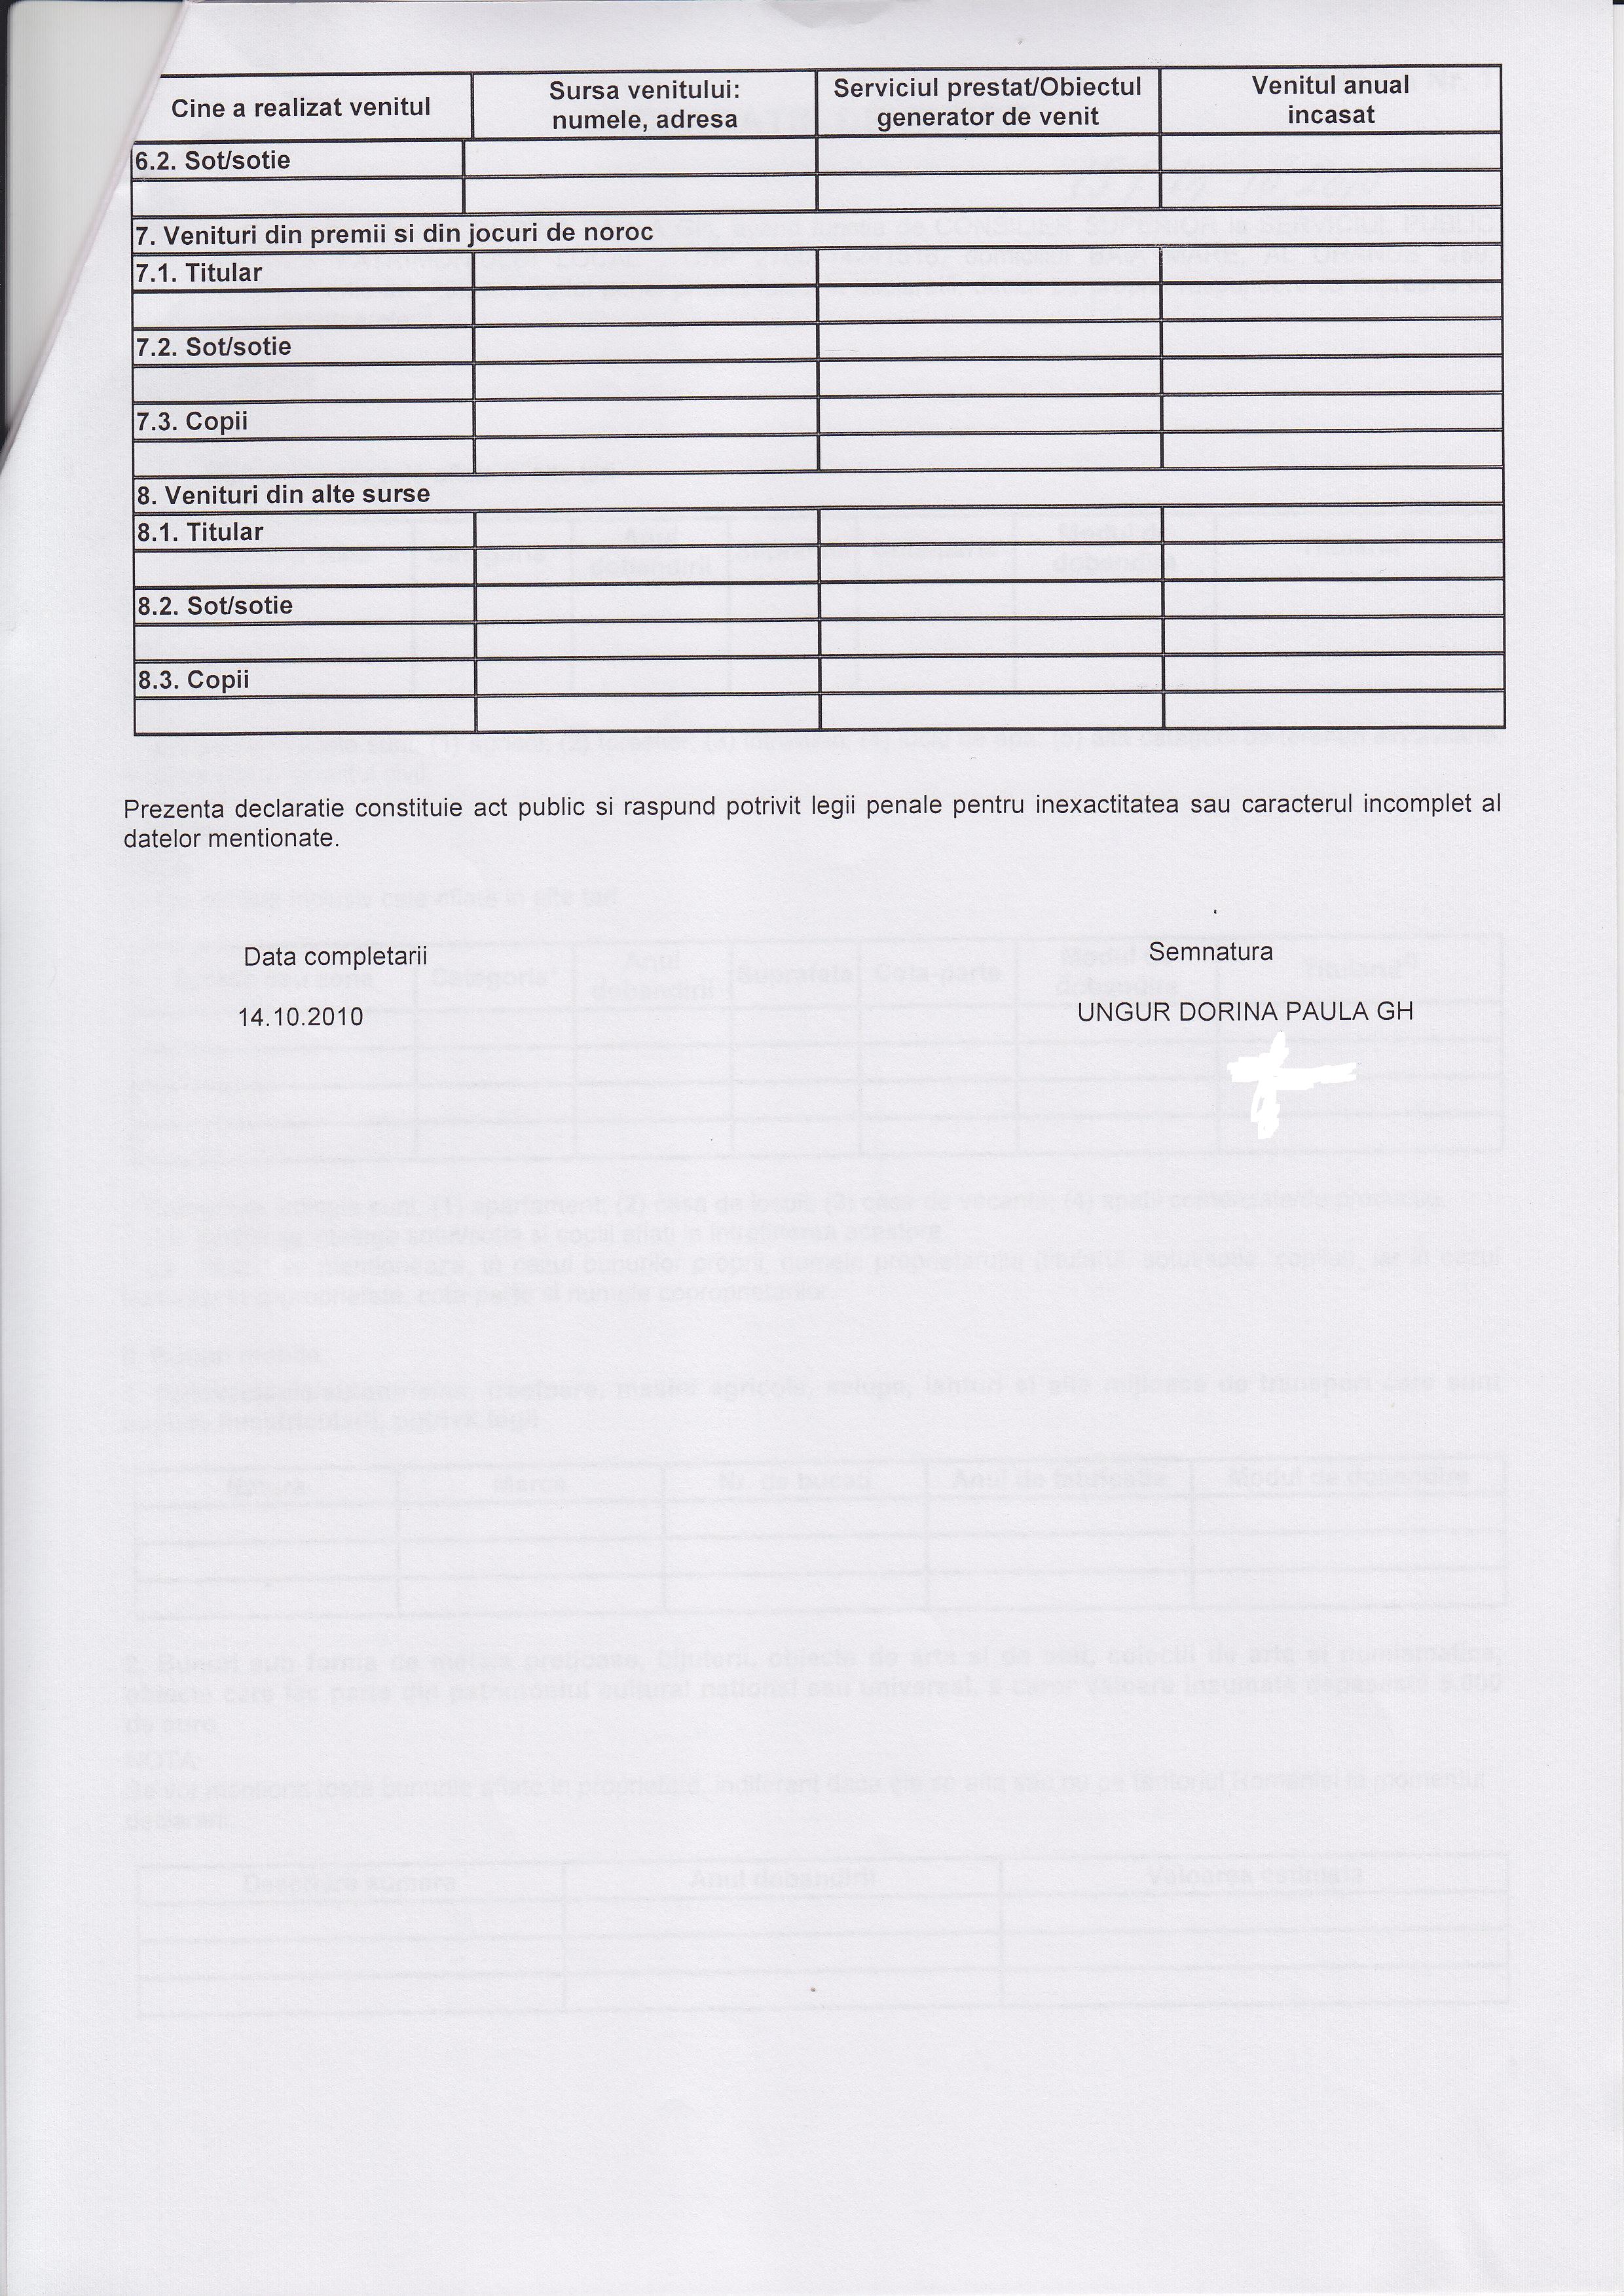 Declaratia de avere si de interese din data 20.12.2010 - pagina 4 din 6